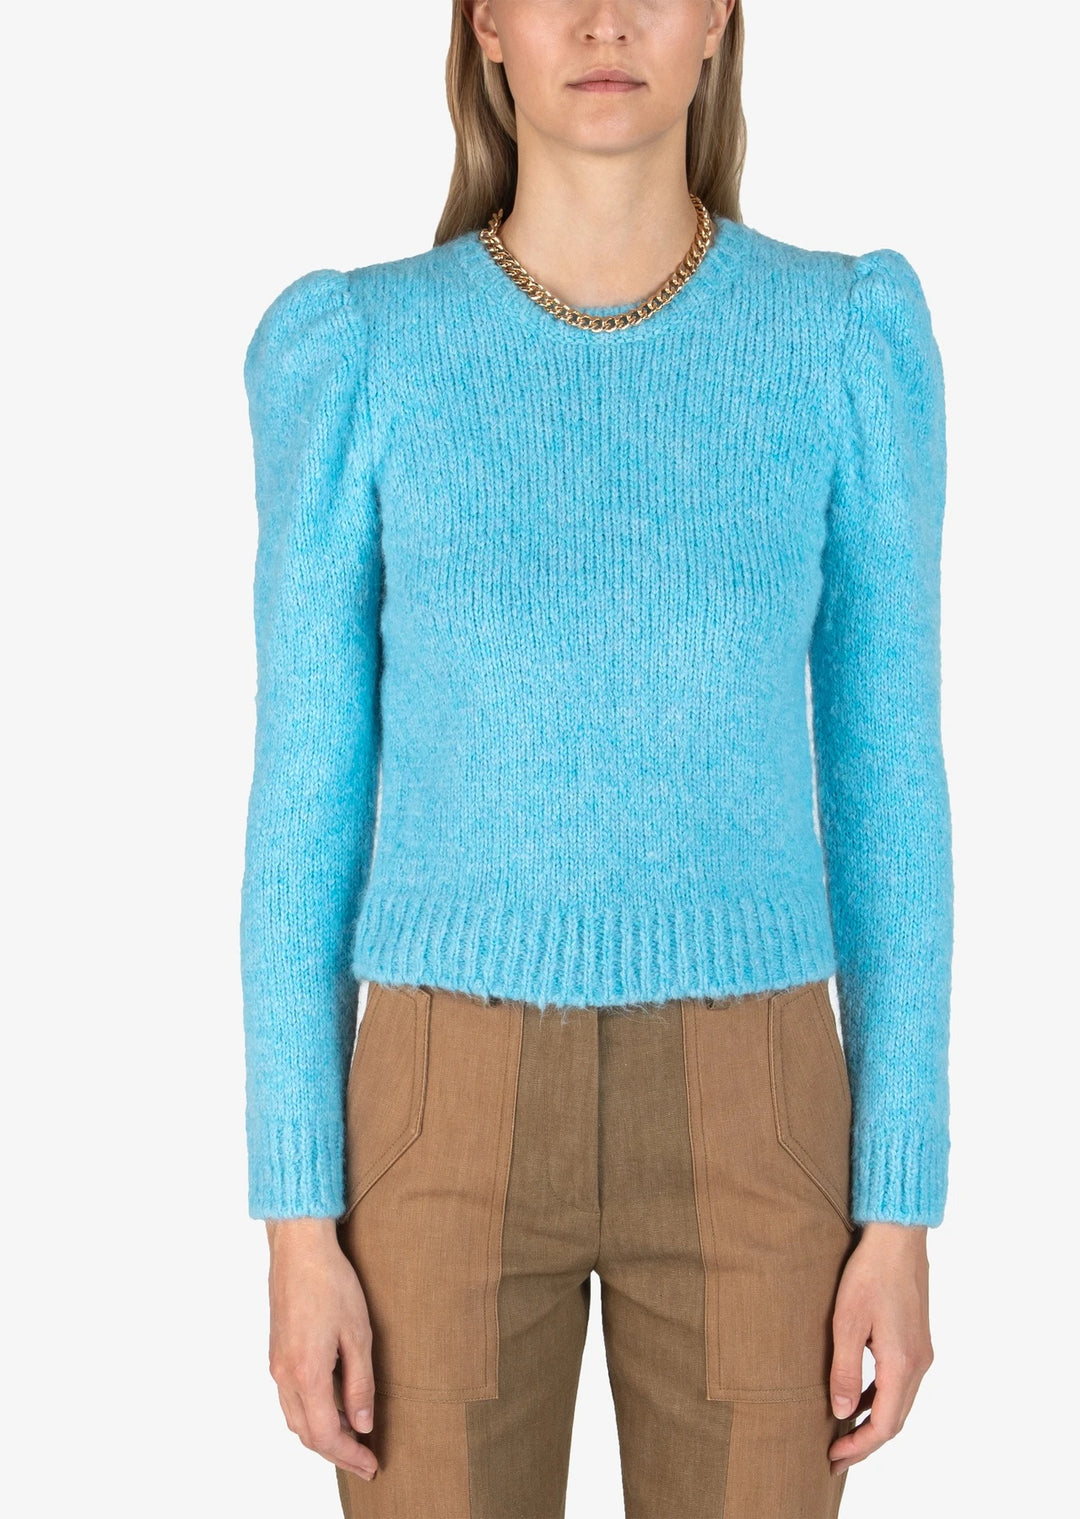 Derek Lam 10 Crosby - Locken Puff Sleeve Sweater in Light Blue